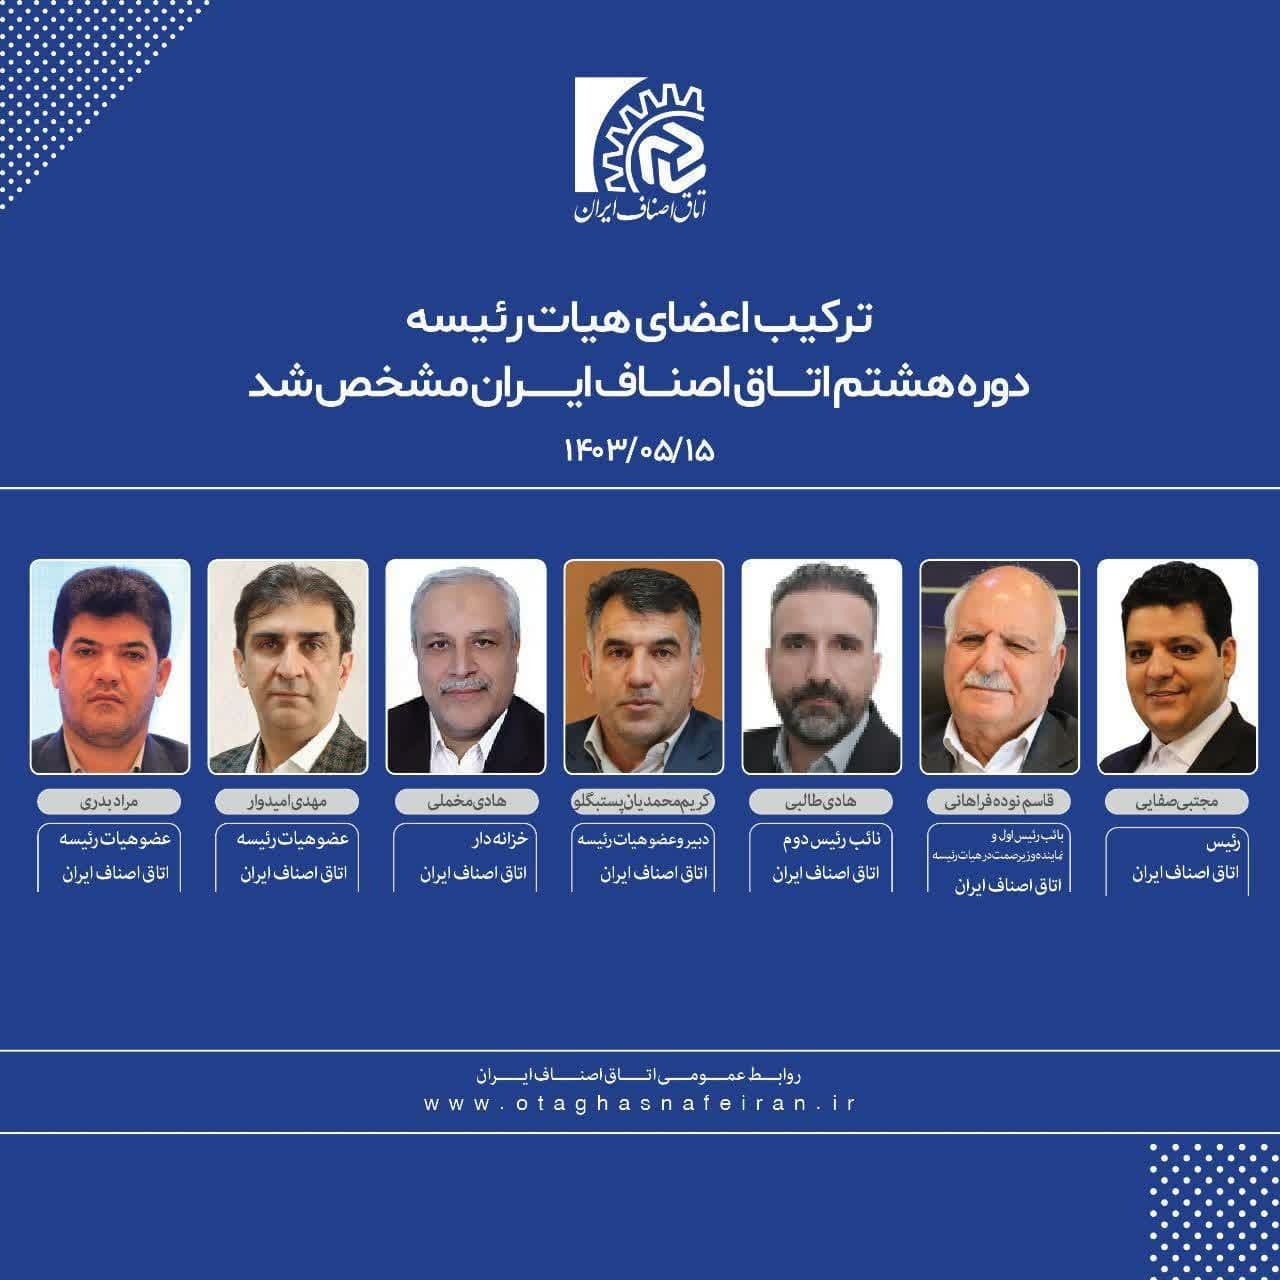 ترکیب اعضای هیات رئیسه دوره هشتم اتاق اصناف ایران مشخص شد + لیست اعضا